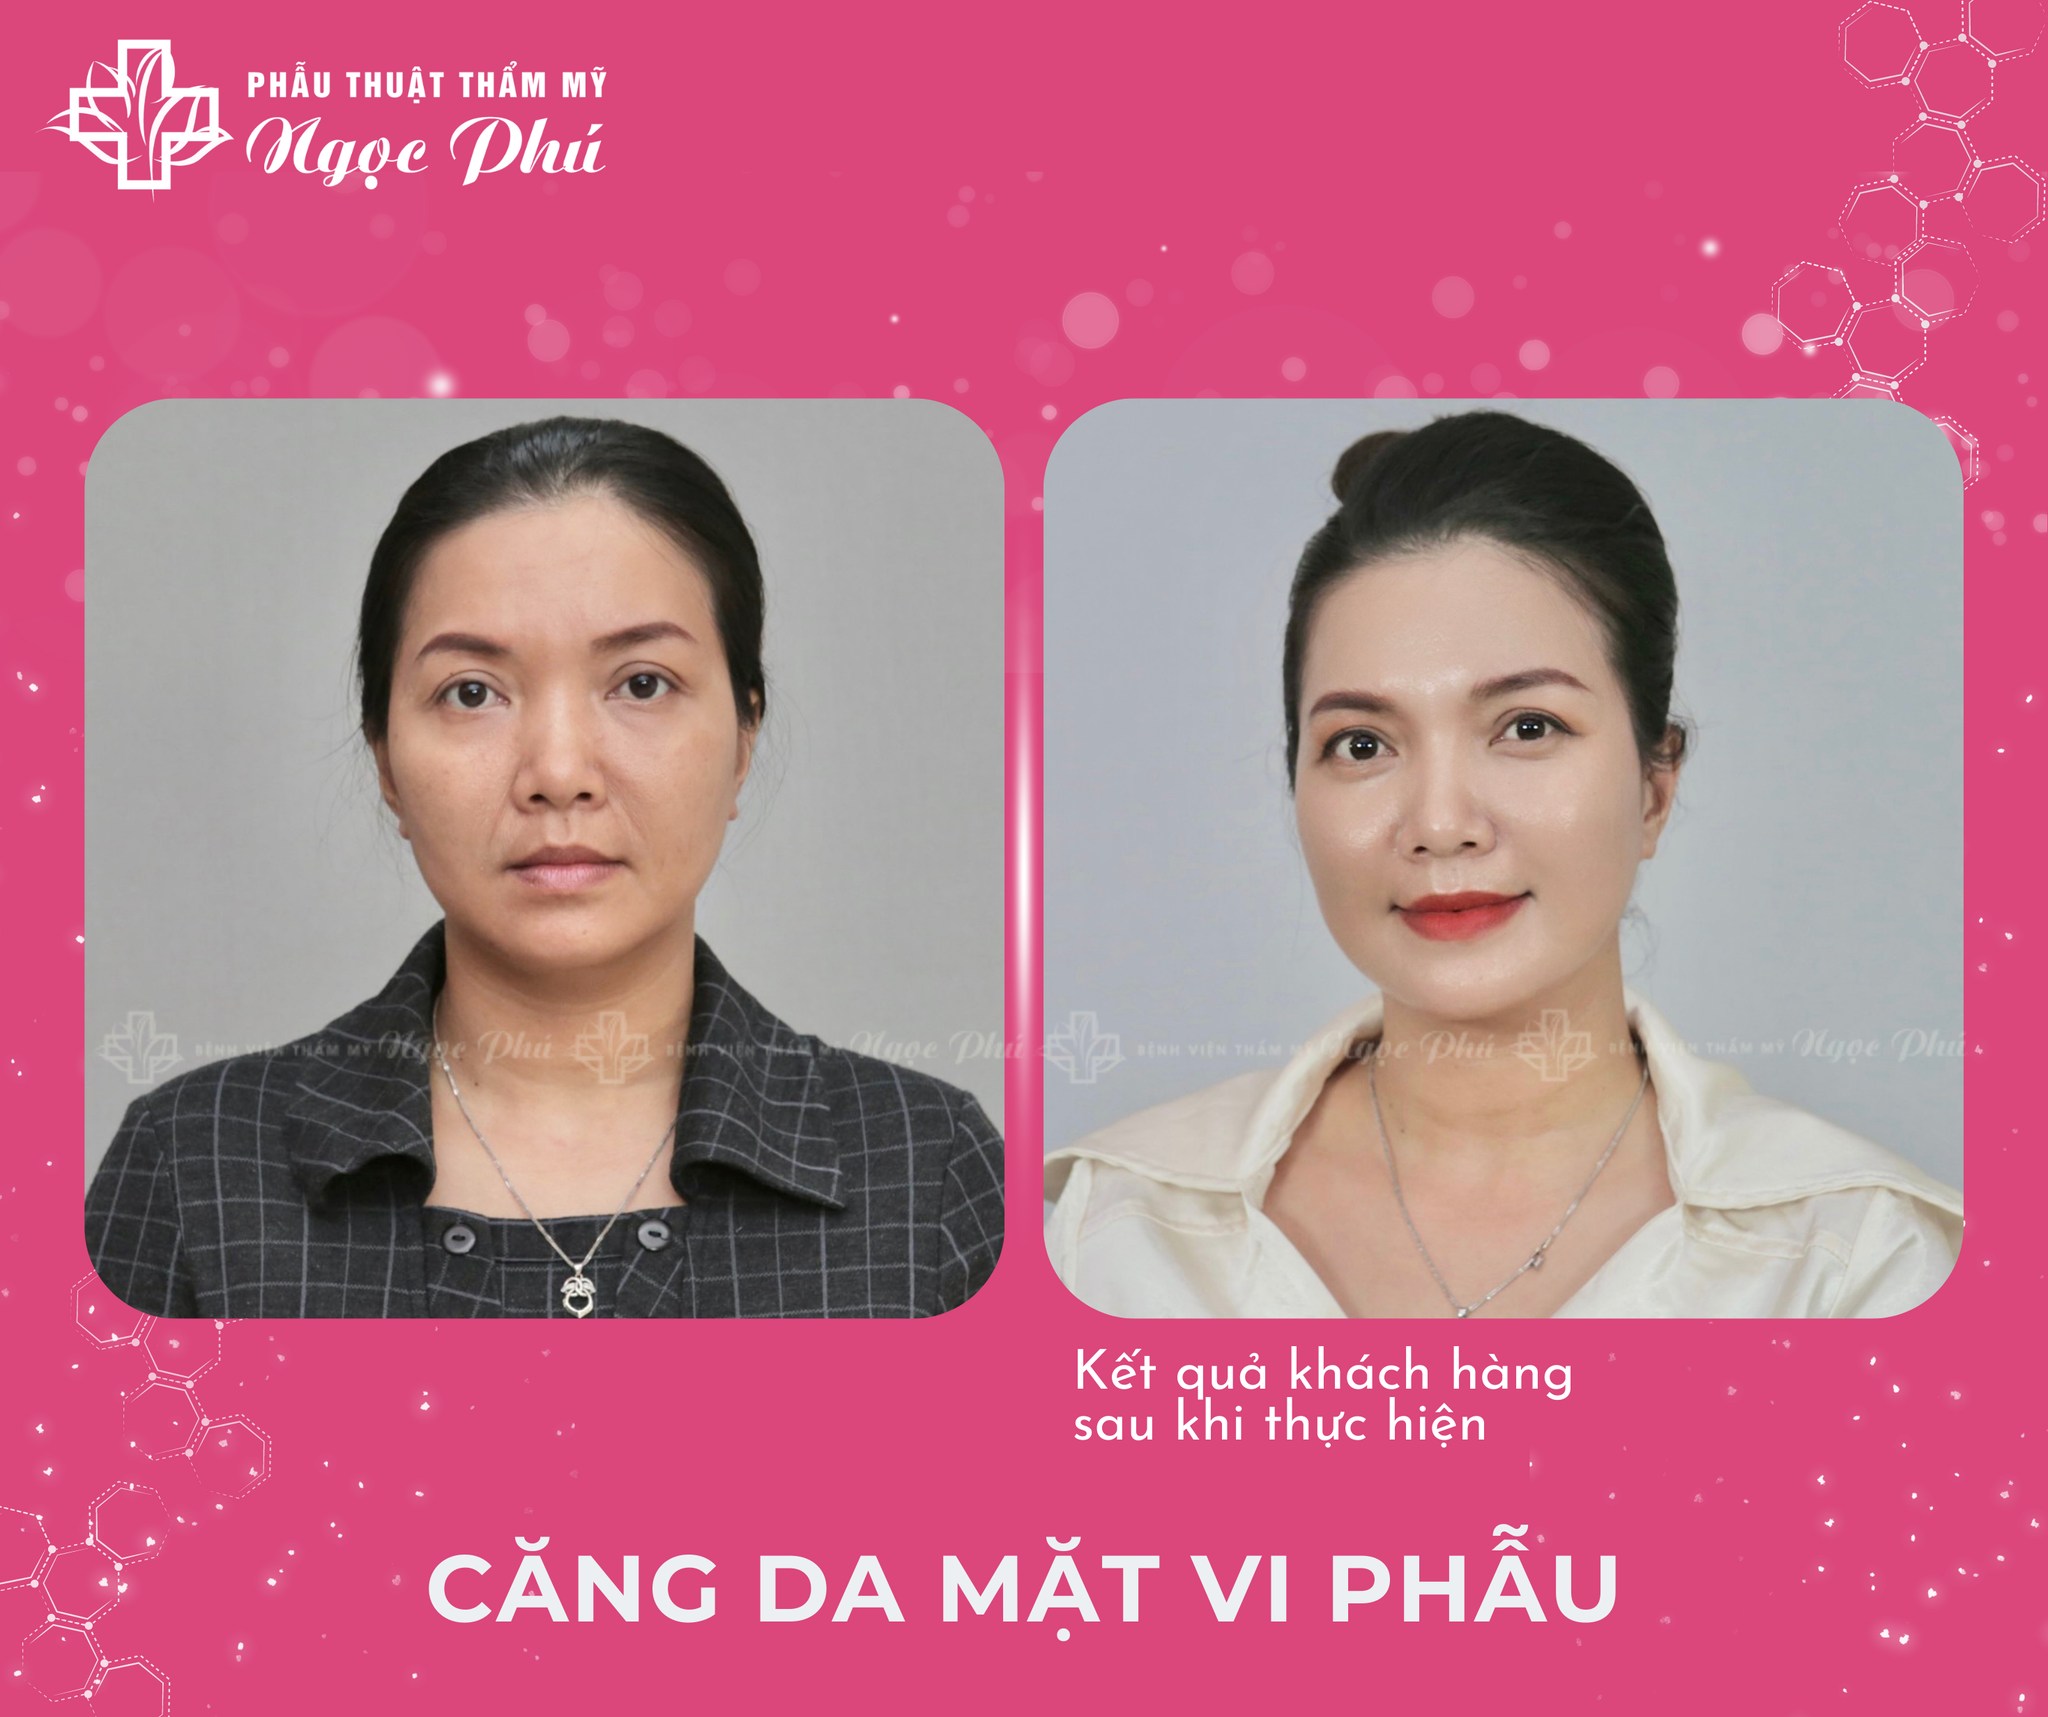 Hình ảnh khách hàng căng da mặt tại Thẩm mỹ Ngọc Phú